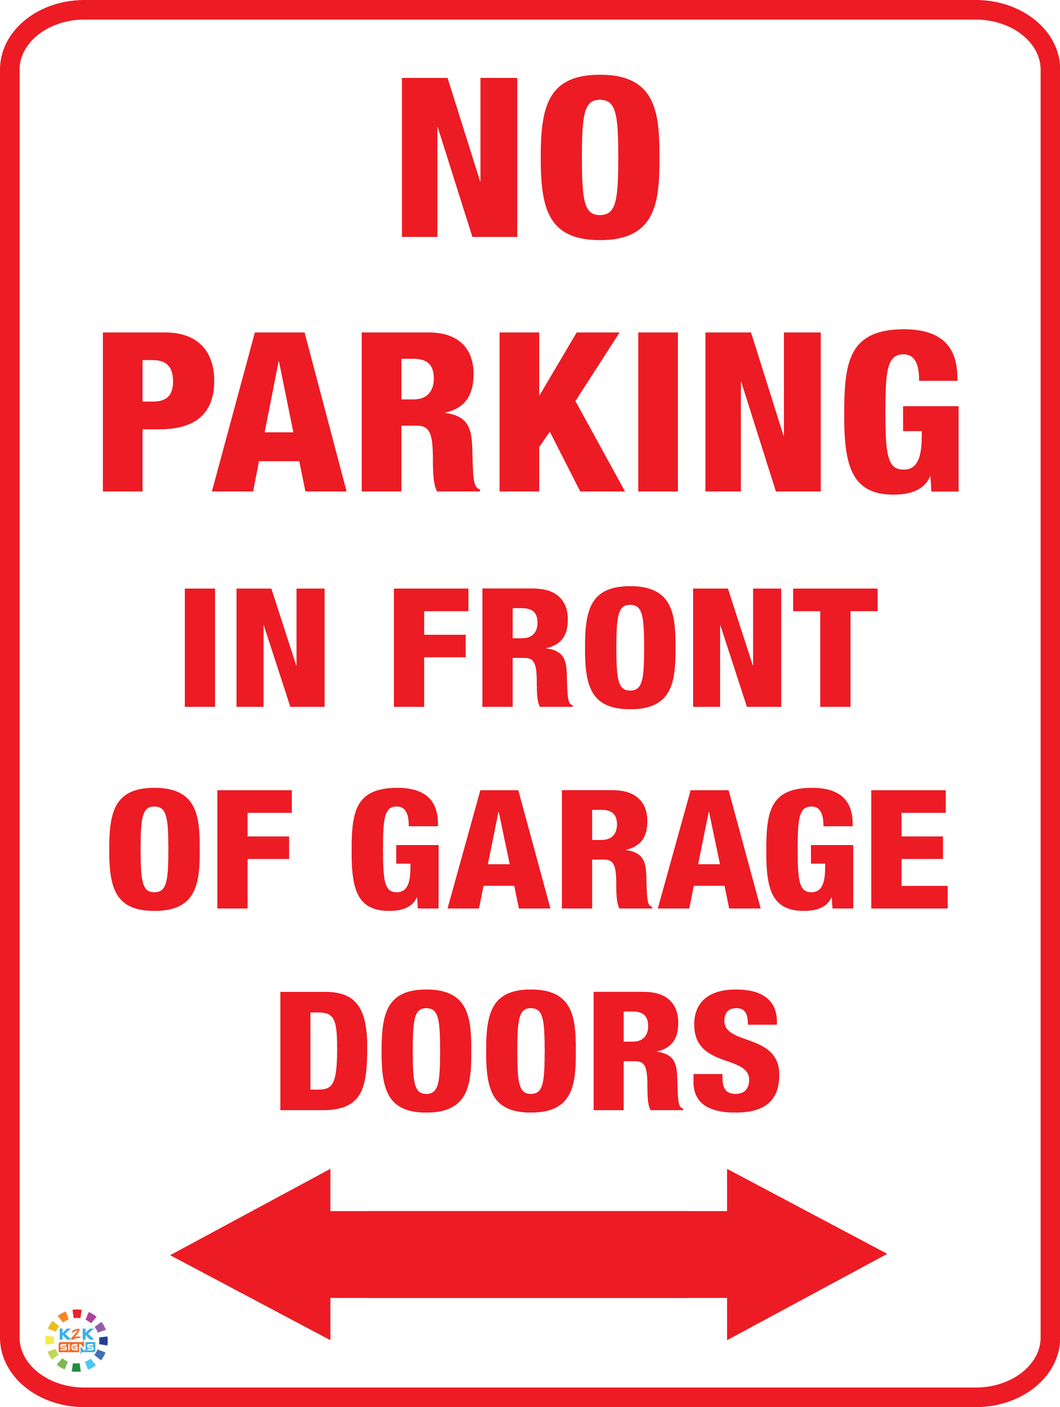 No Parking In Front Of Garage Doors (Two Way Arrow Sign)